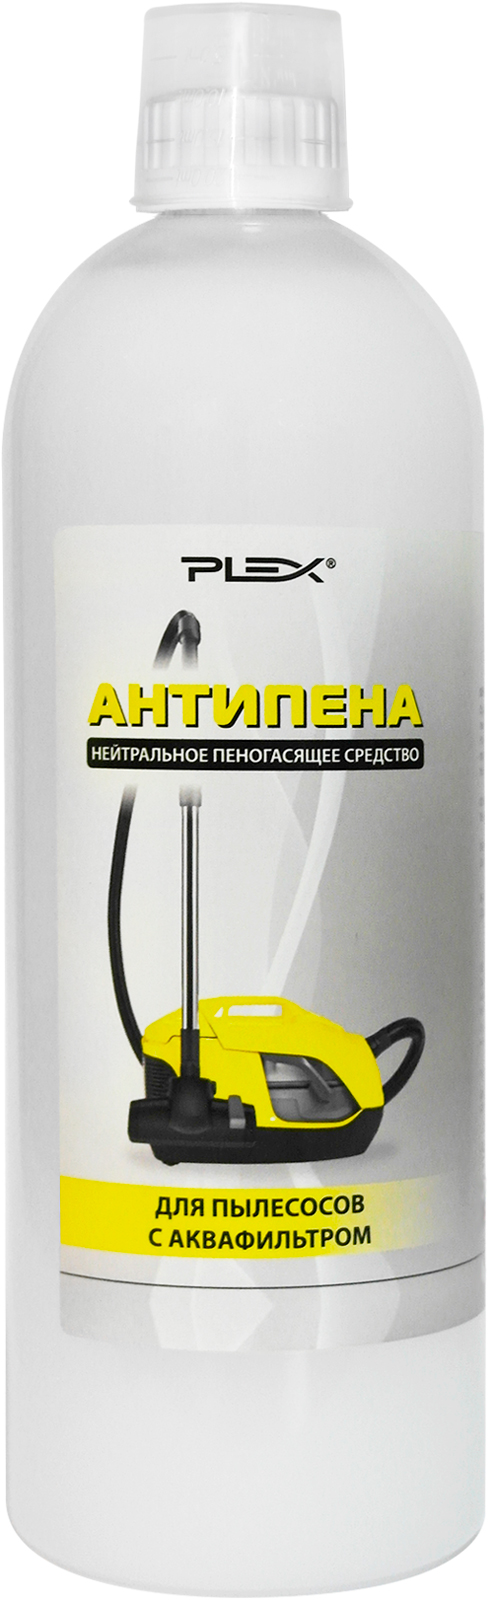 Пеногаситель для пылесосов PLEX АНТИПЕНА 1л пеногаситель для пылесоса fox chemie antifoam agent 300 мл